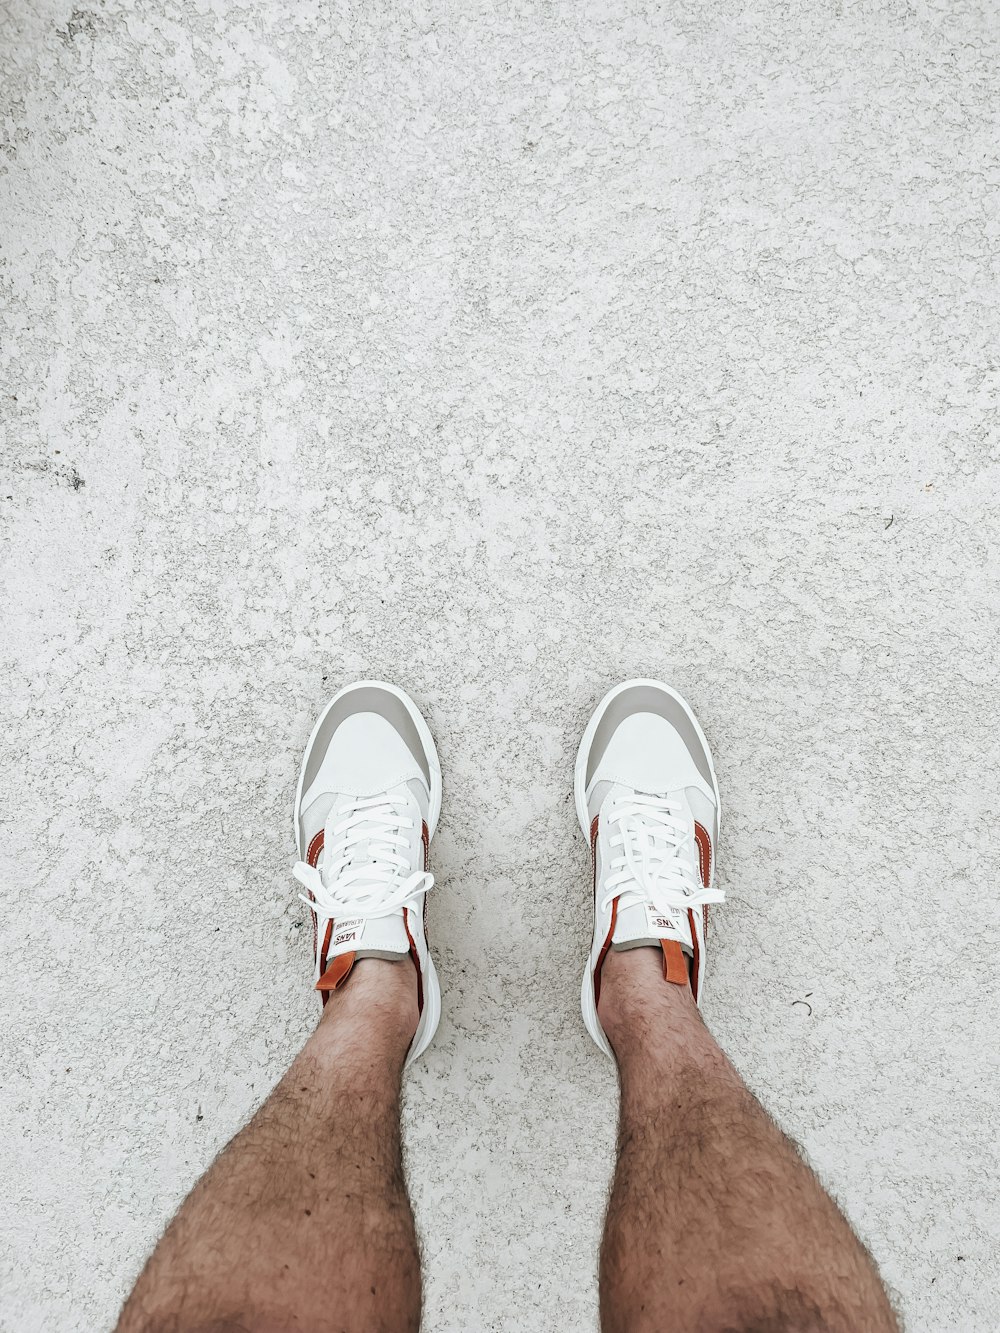 die Beine einer Person mit weißen Schuhen